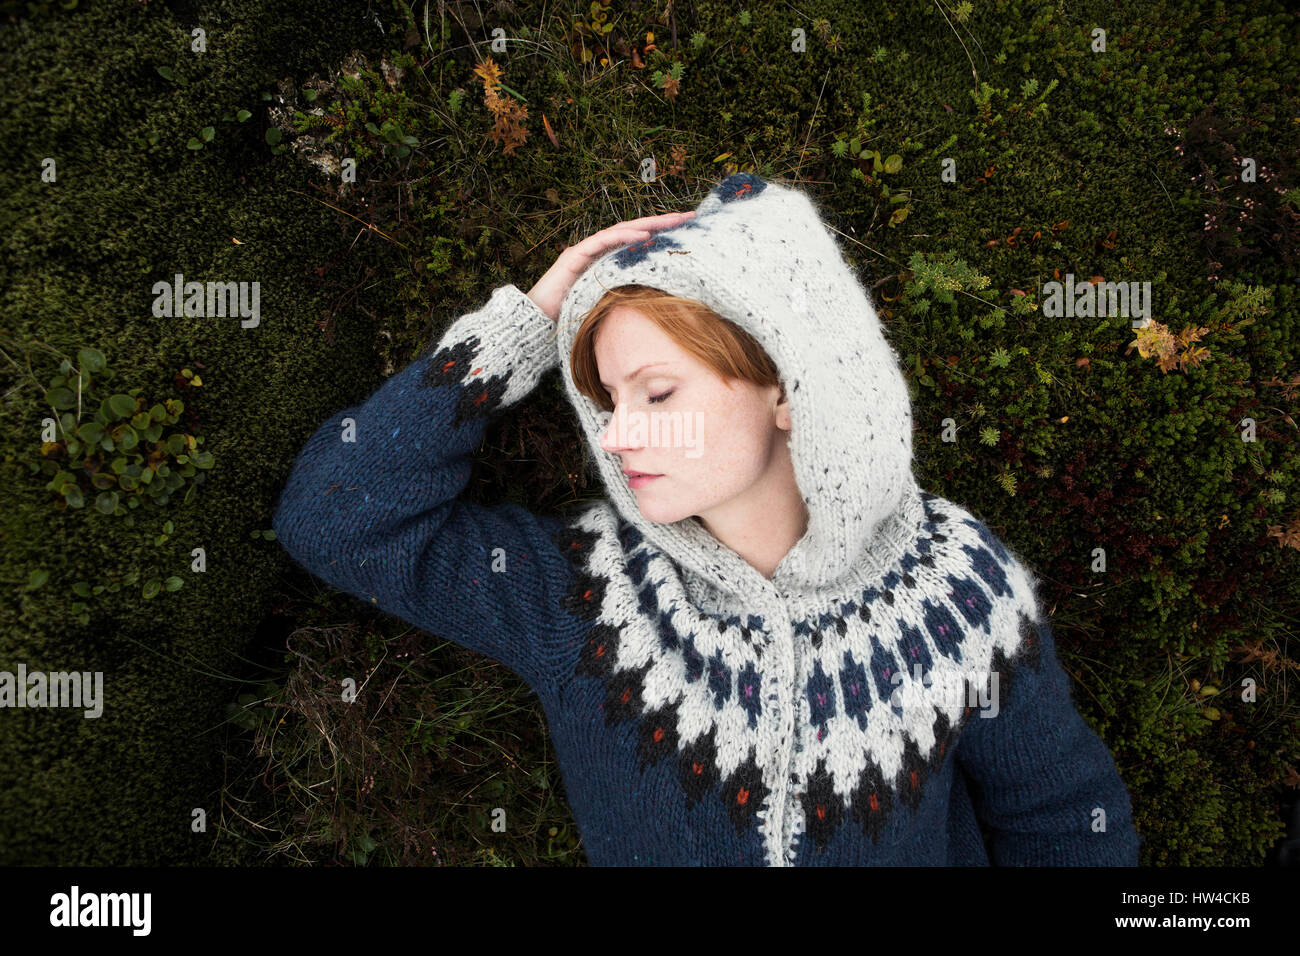 Caucasian woman wearing sweater laying on moss Stock Photo